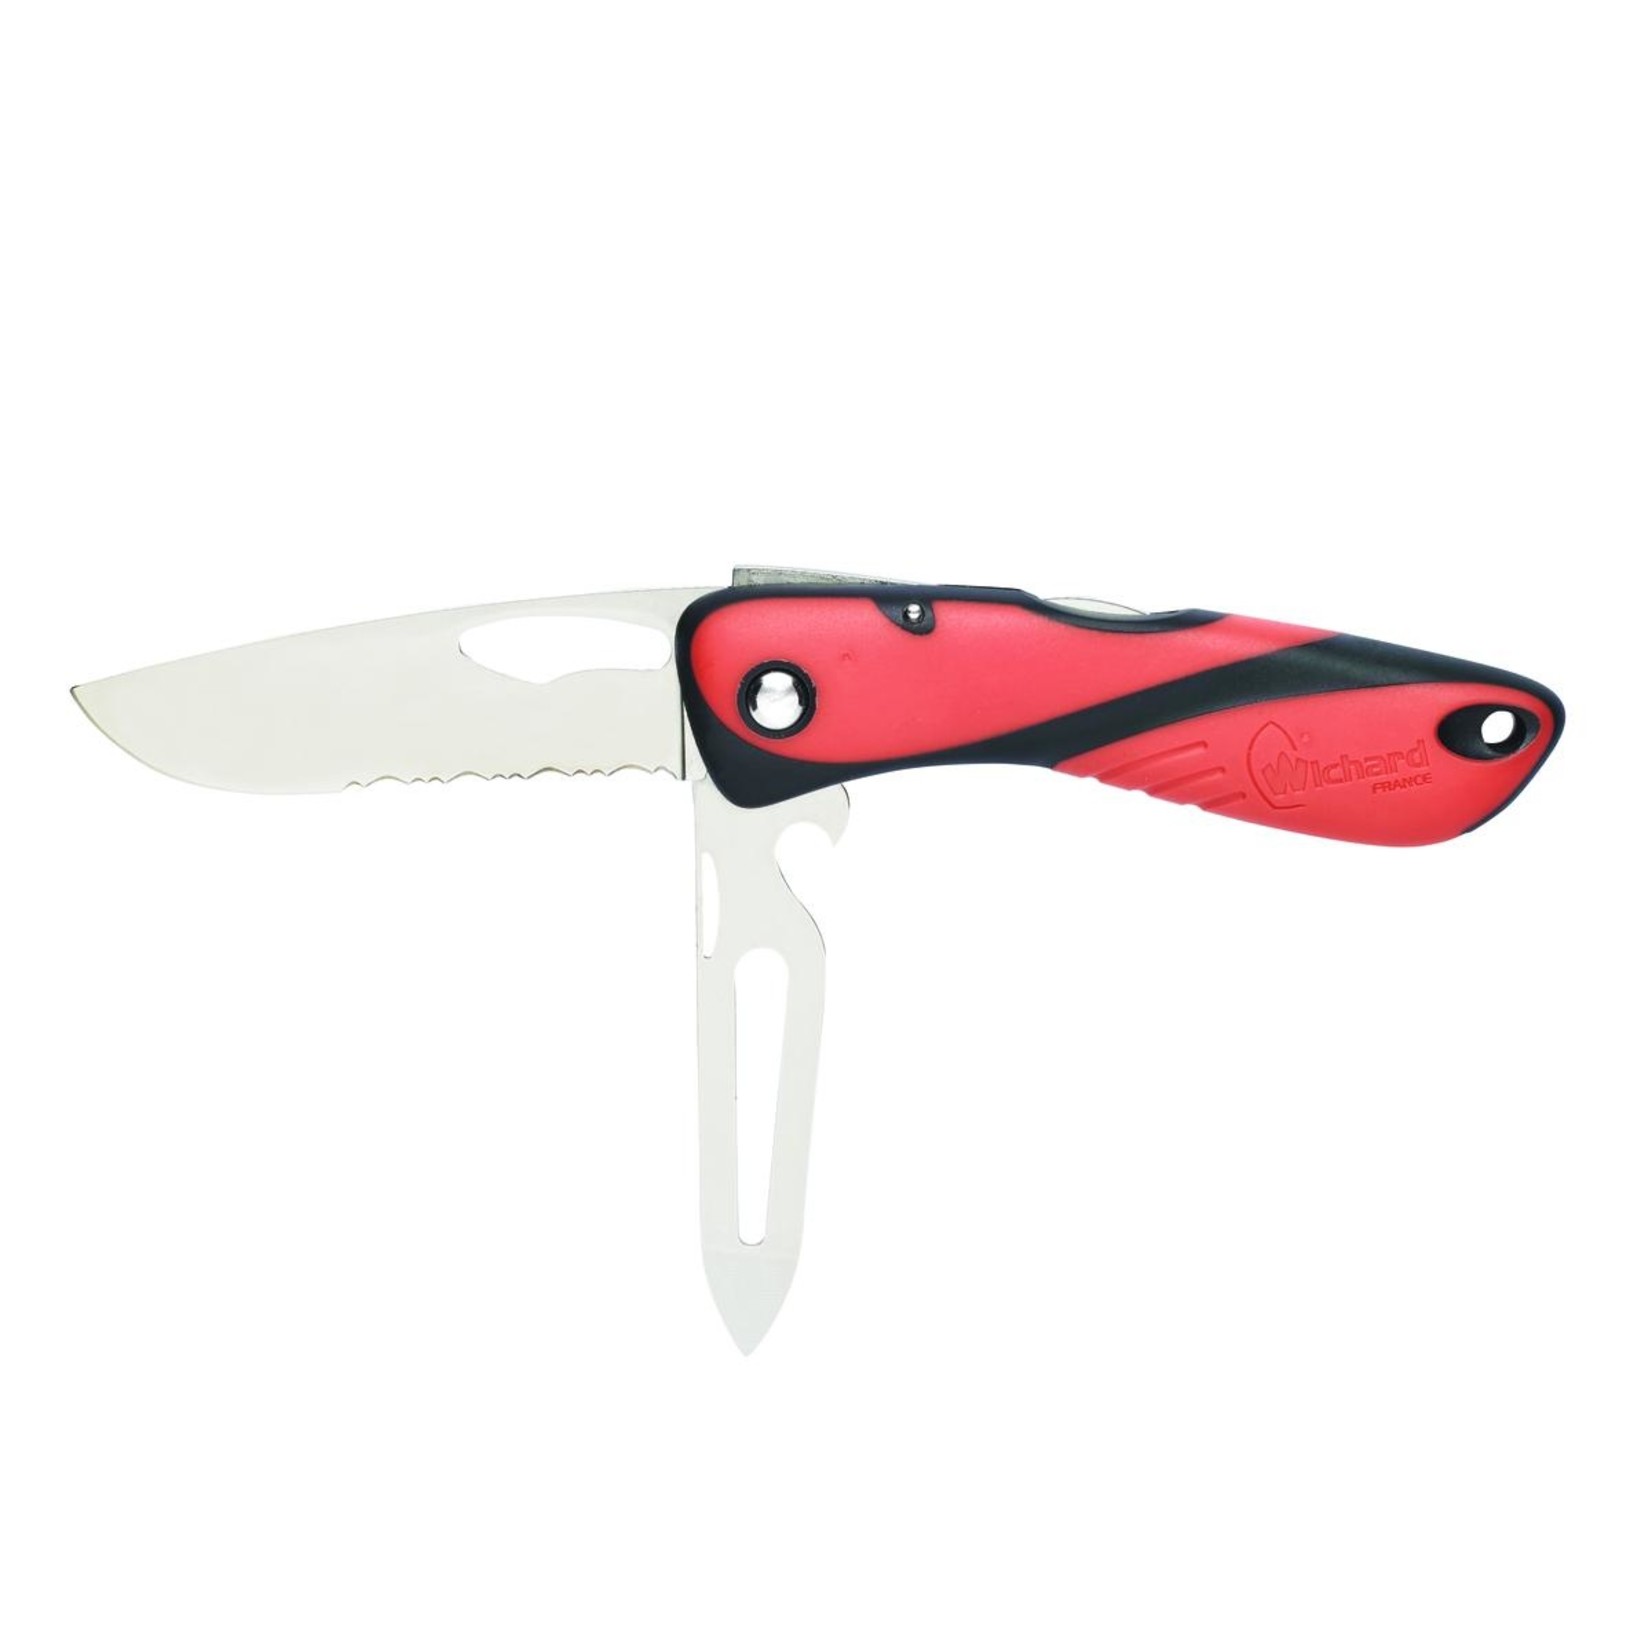 Wichard Offshore knife - Serrated blade - Shackler / Spike - Orange